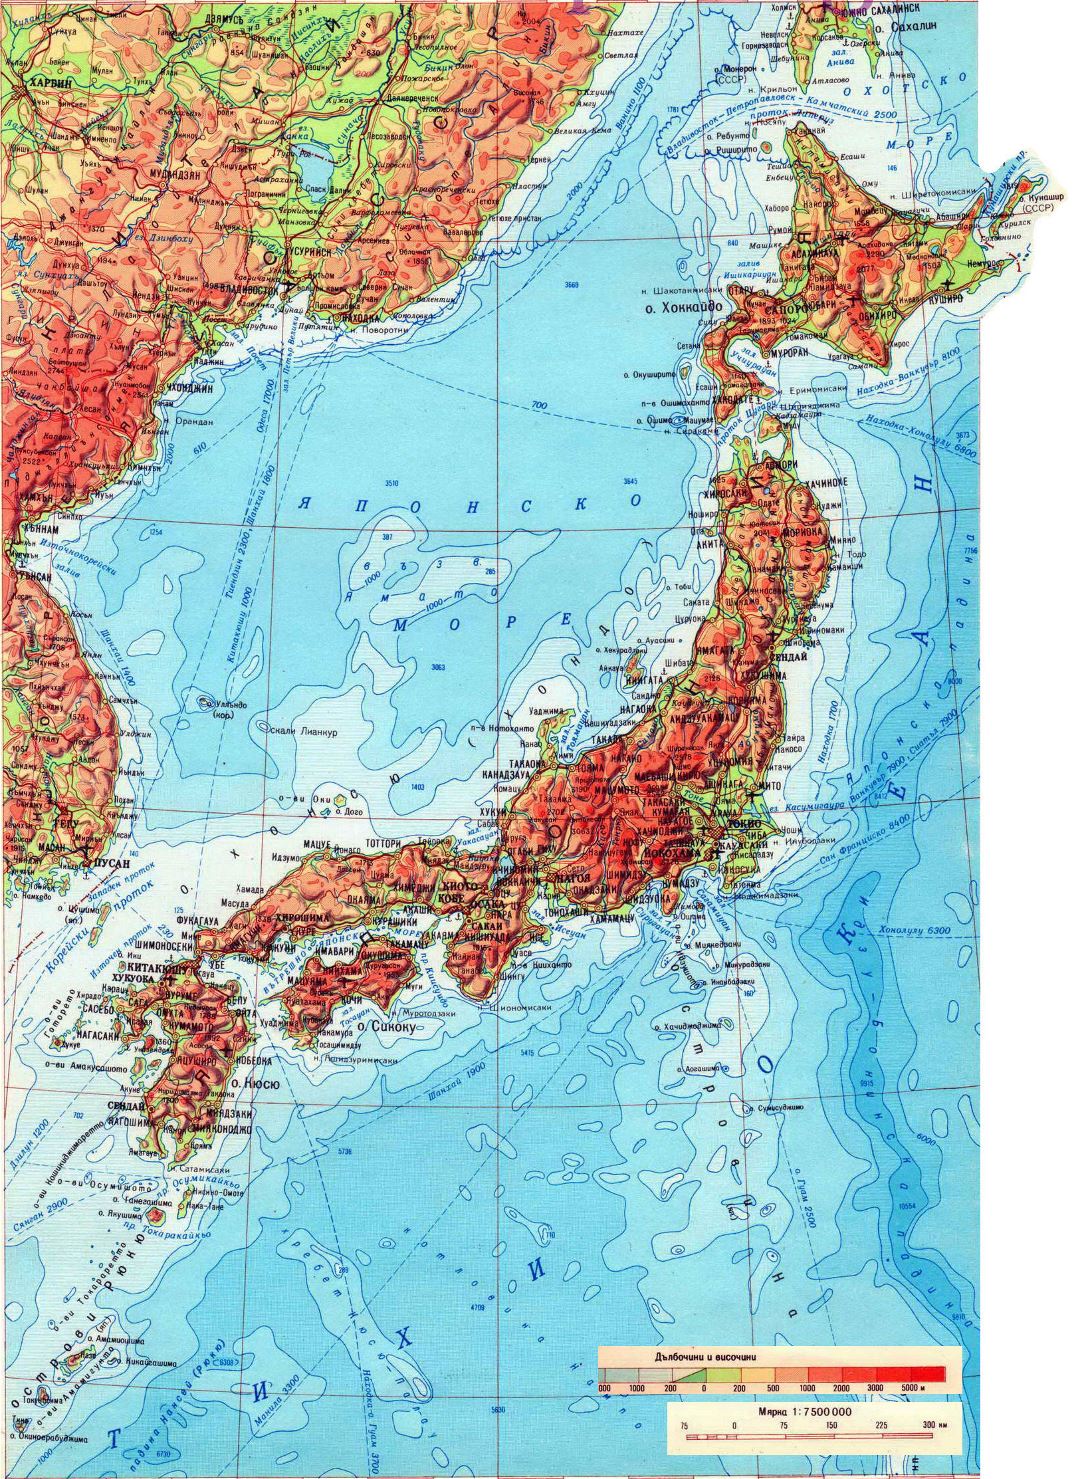 Grande detallado mapa físico de Japón en ruso